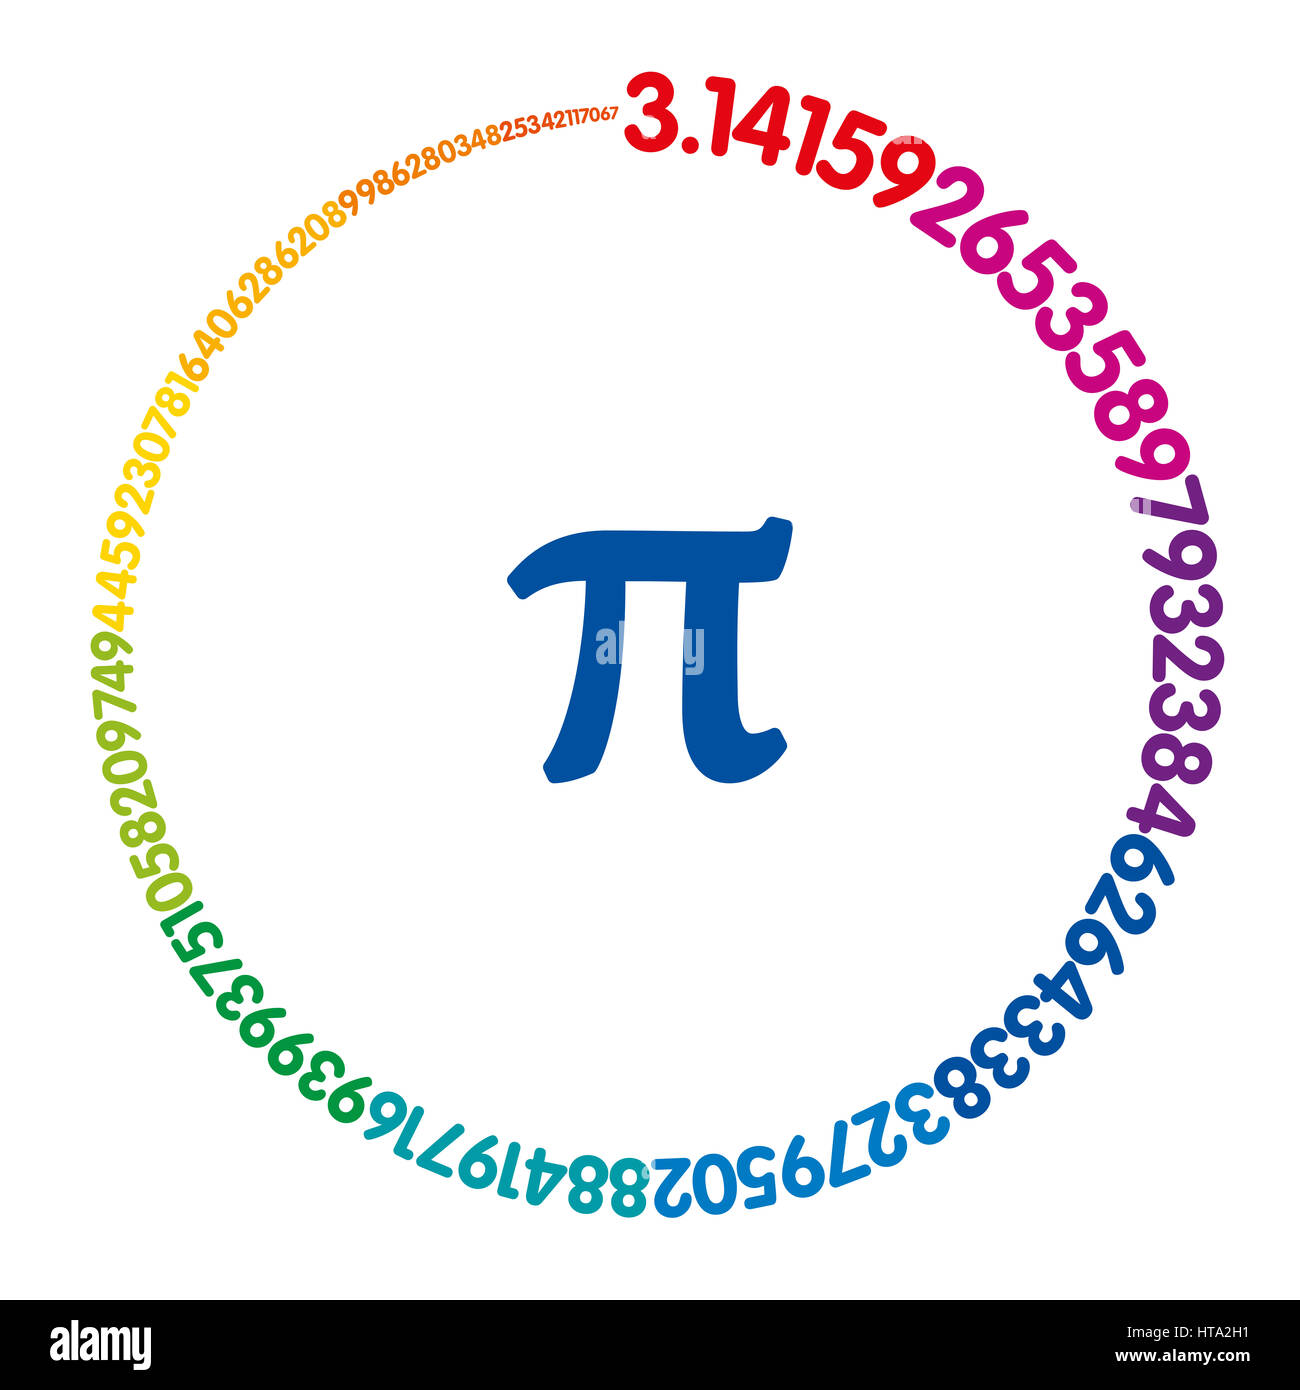 Hundert Ziffern der Zahl Pi einen Regenbogen farbige Kreis bilden. Wert der unendliche Zahl Pi auf 99 Stellen hinter dem Komma genau. Spektrums eingefärbt. Stockfoto